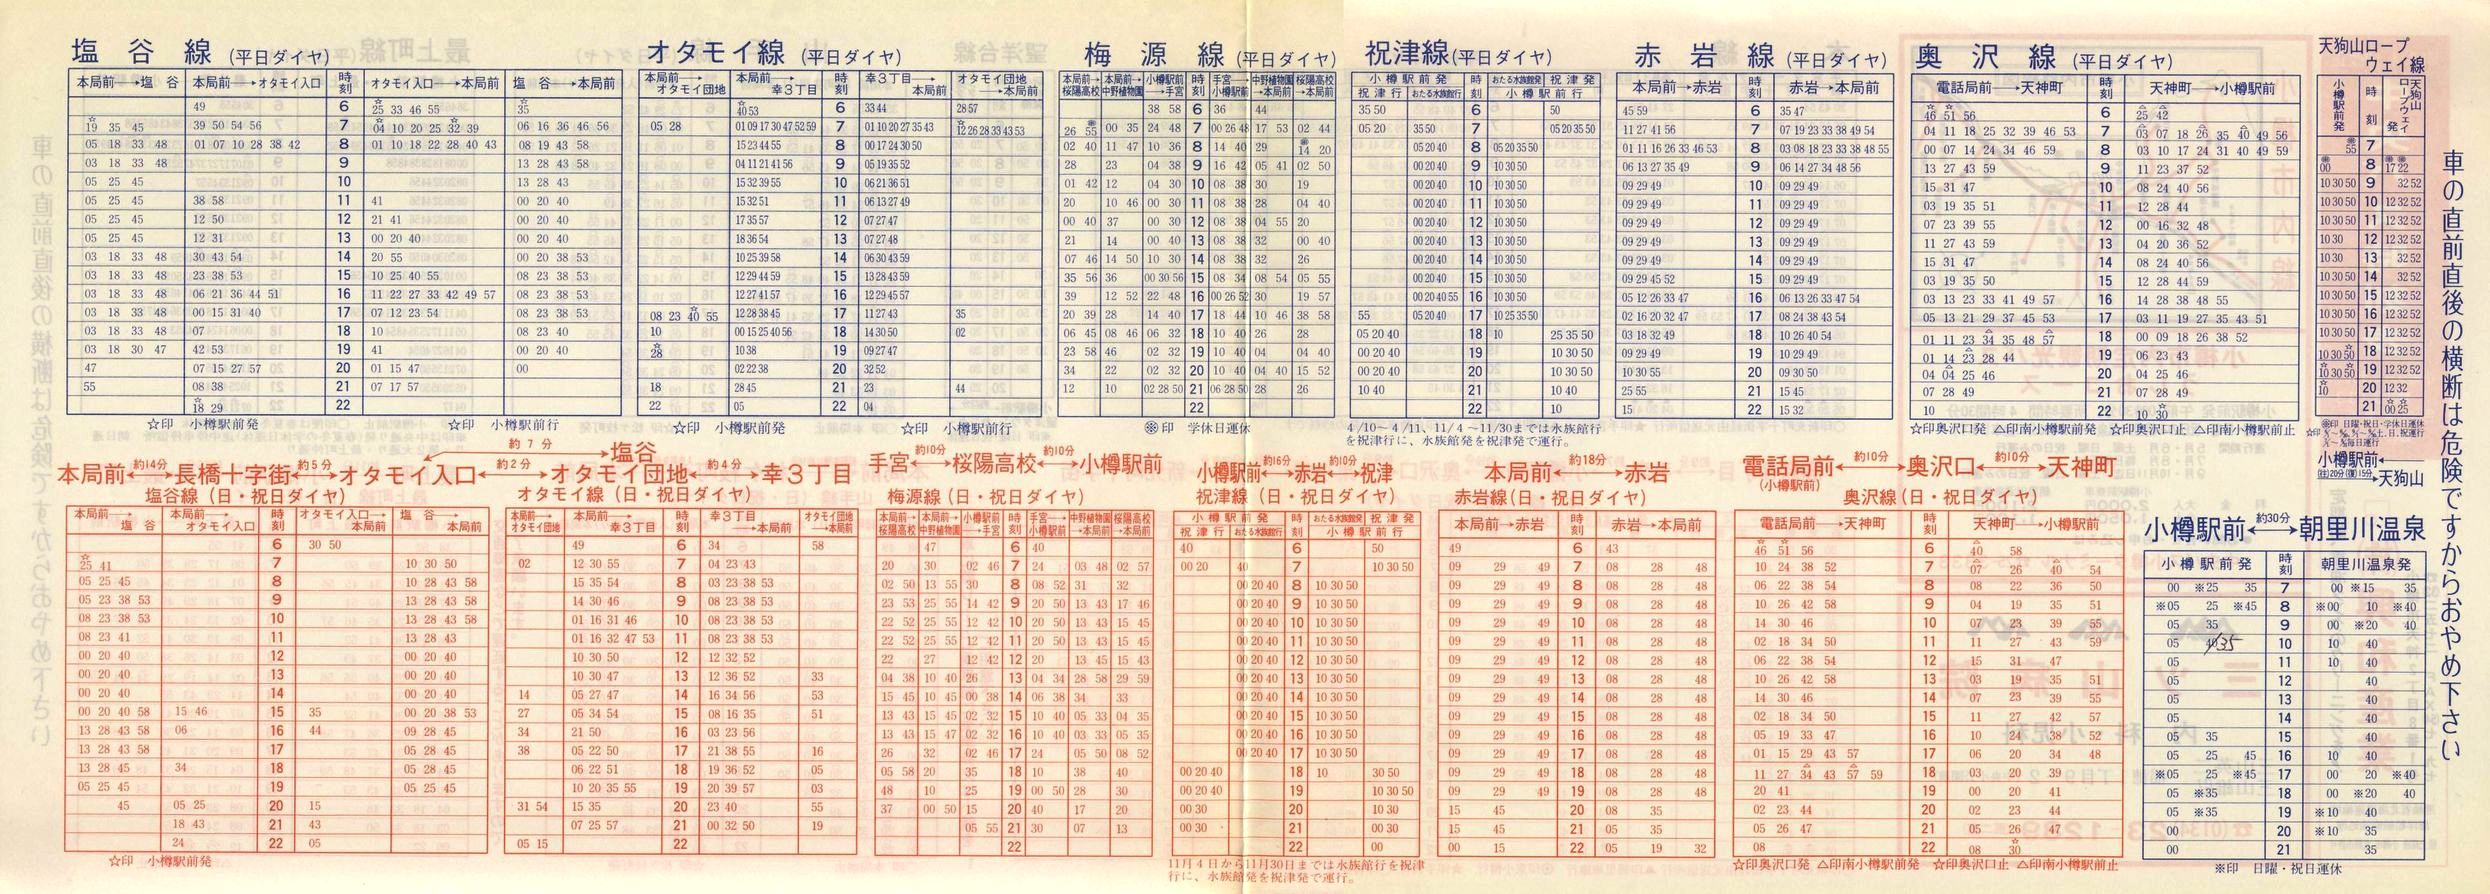 1987-04-10改正_北海道中央バス(小樽)_小樽市内線時刻表裏面